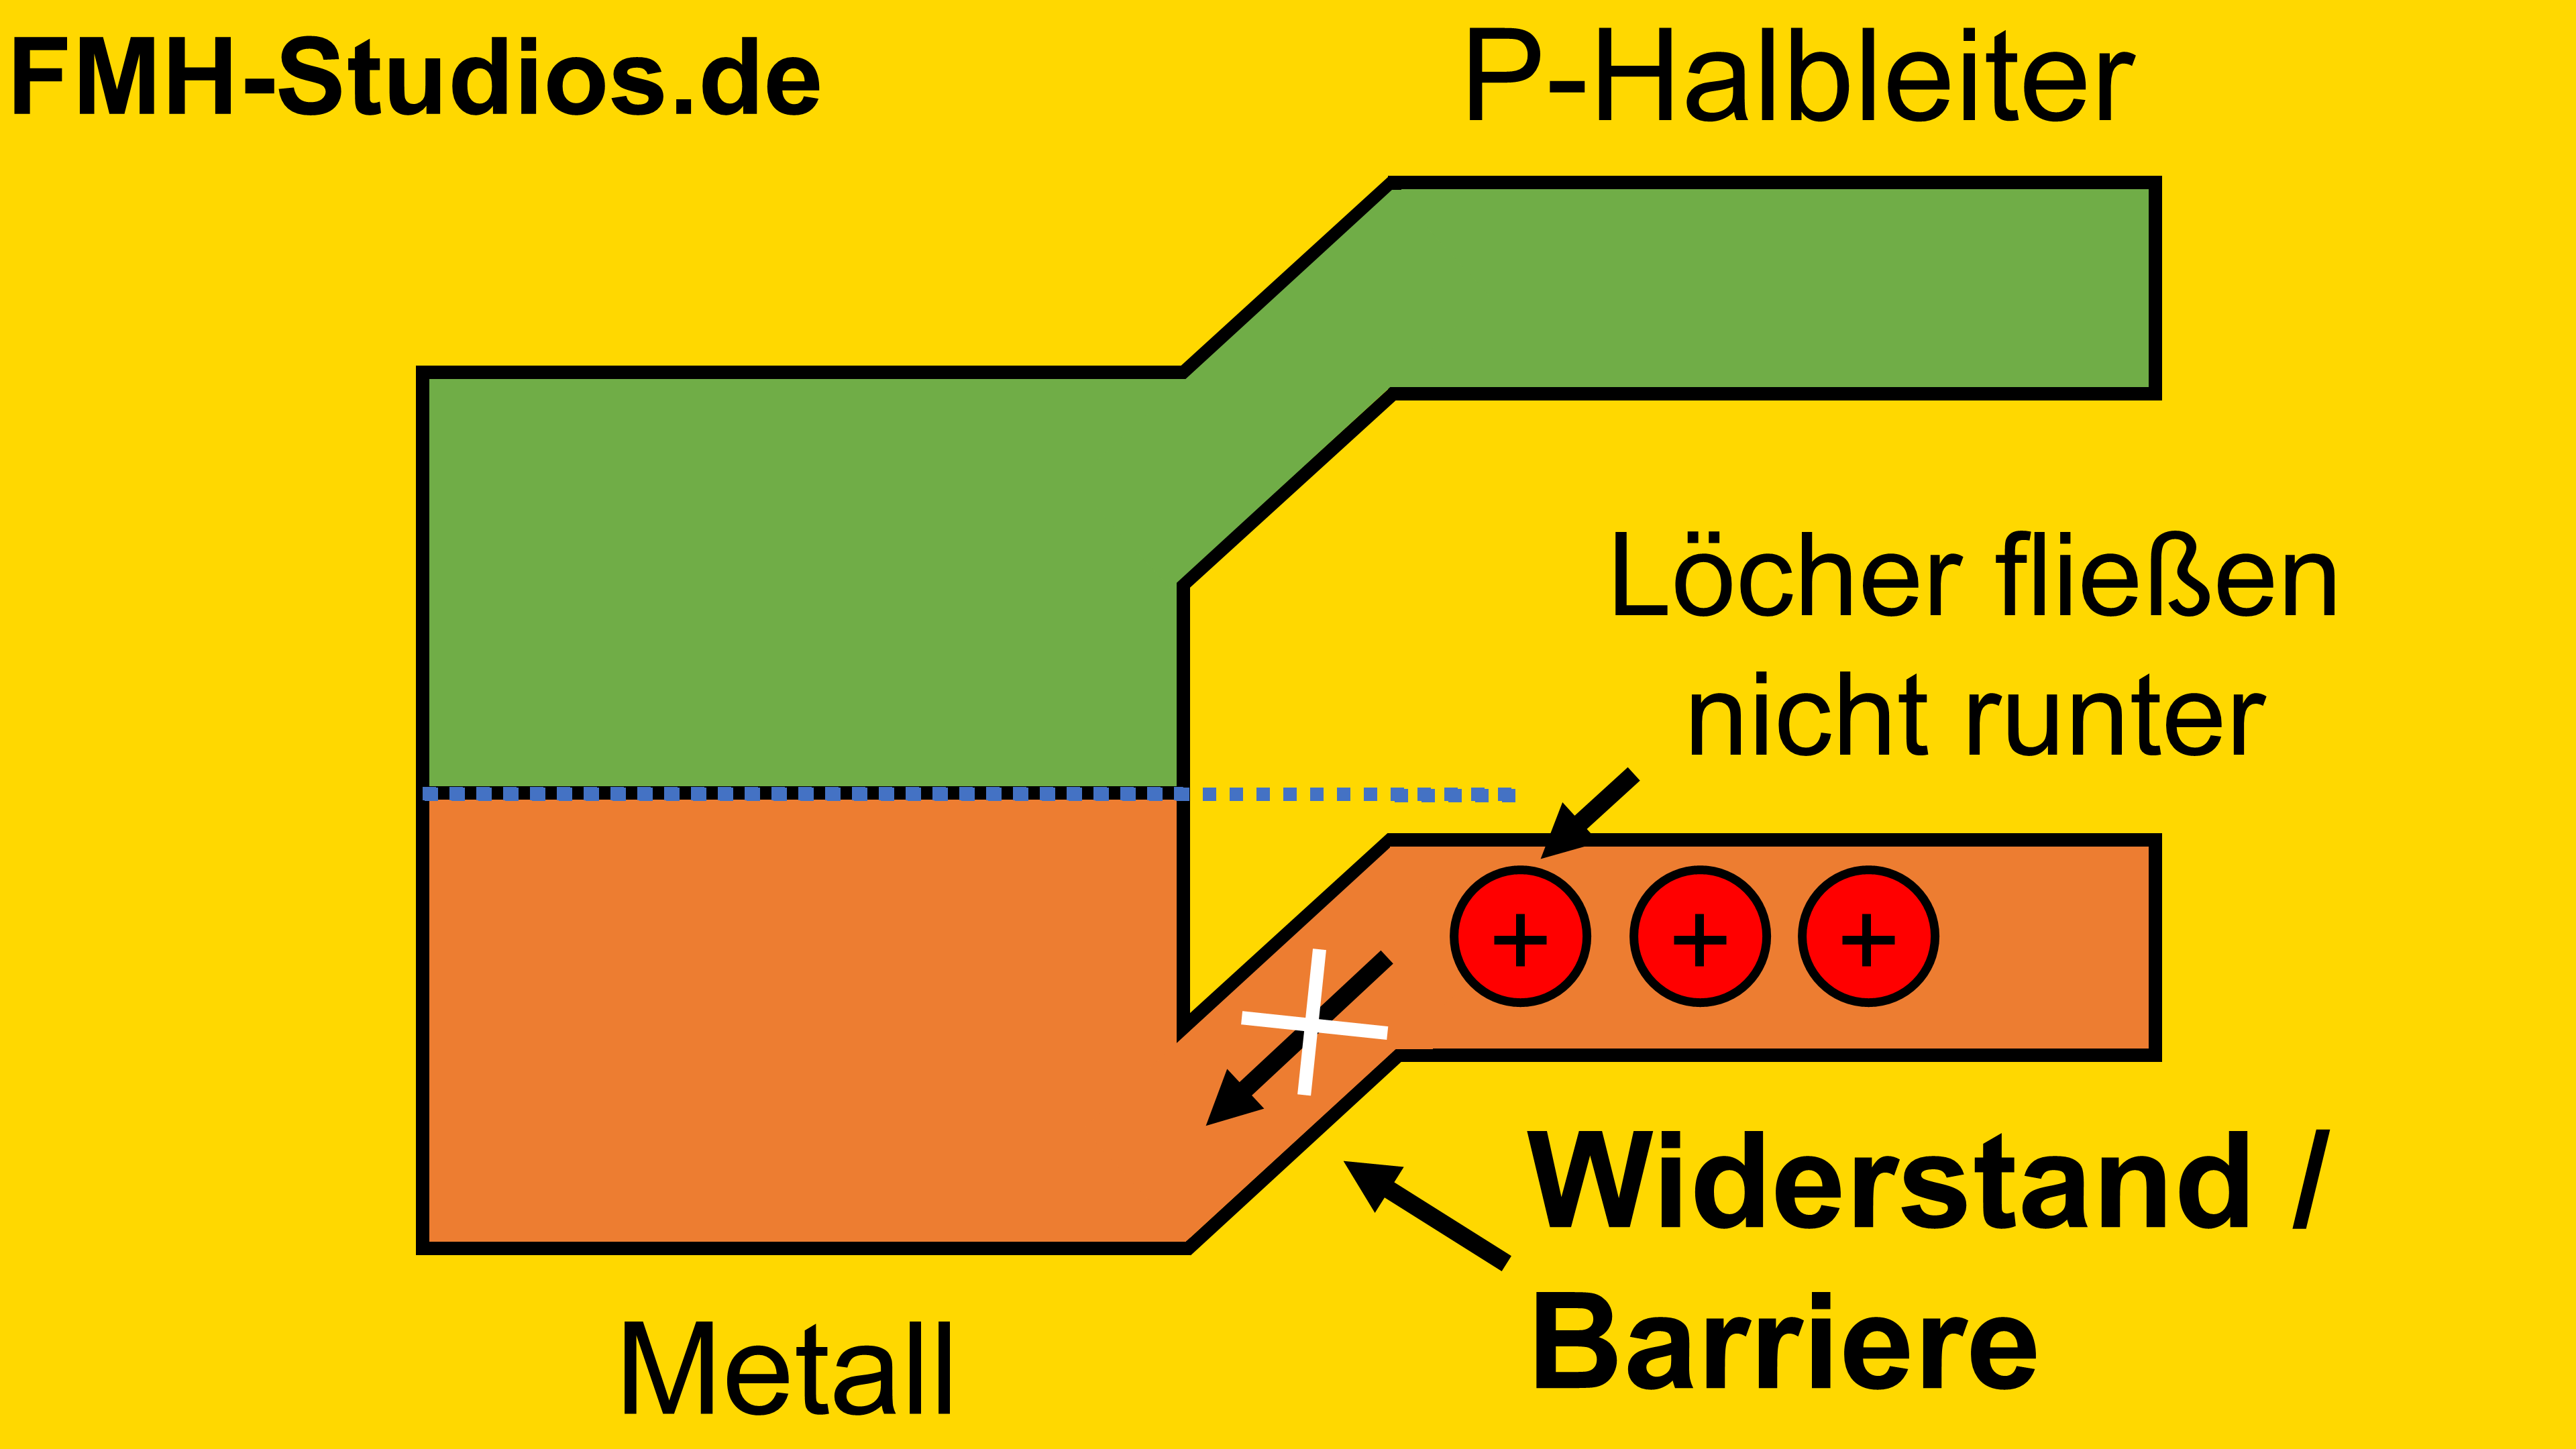 Diode - Halbleiter - PN-Übergang - Schottky-Diode - Schottky-Kontakt - Schottky - thermisches Gleichgewicht - Biegung - Barriere - P dotiert